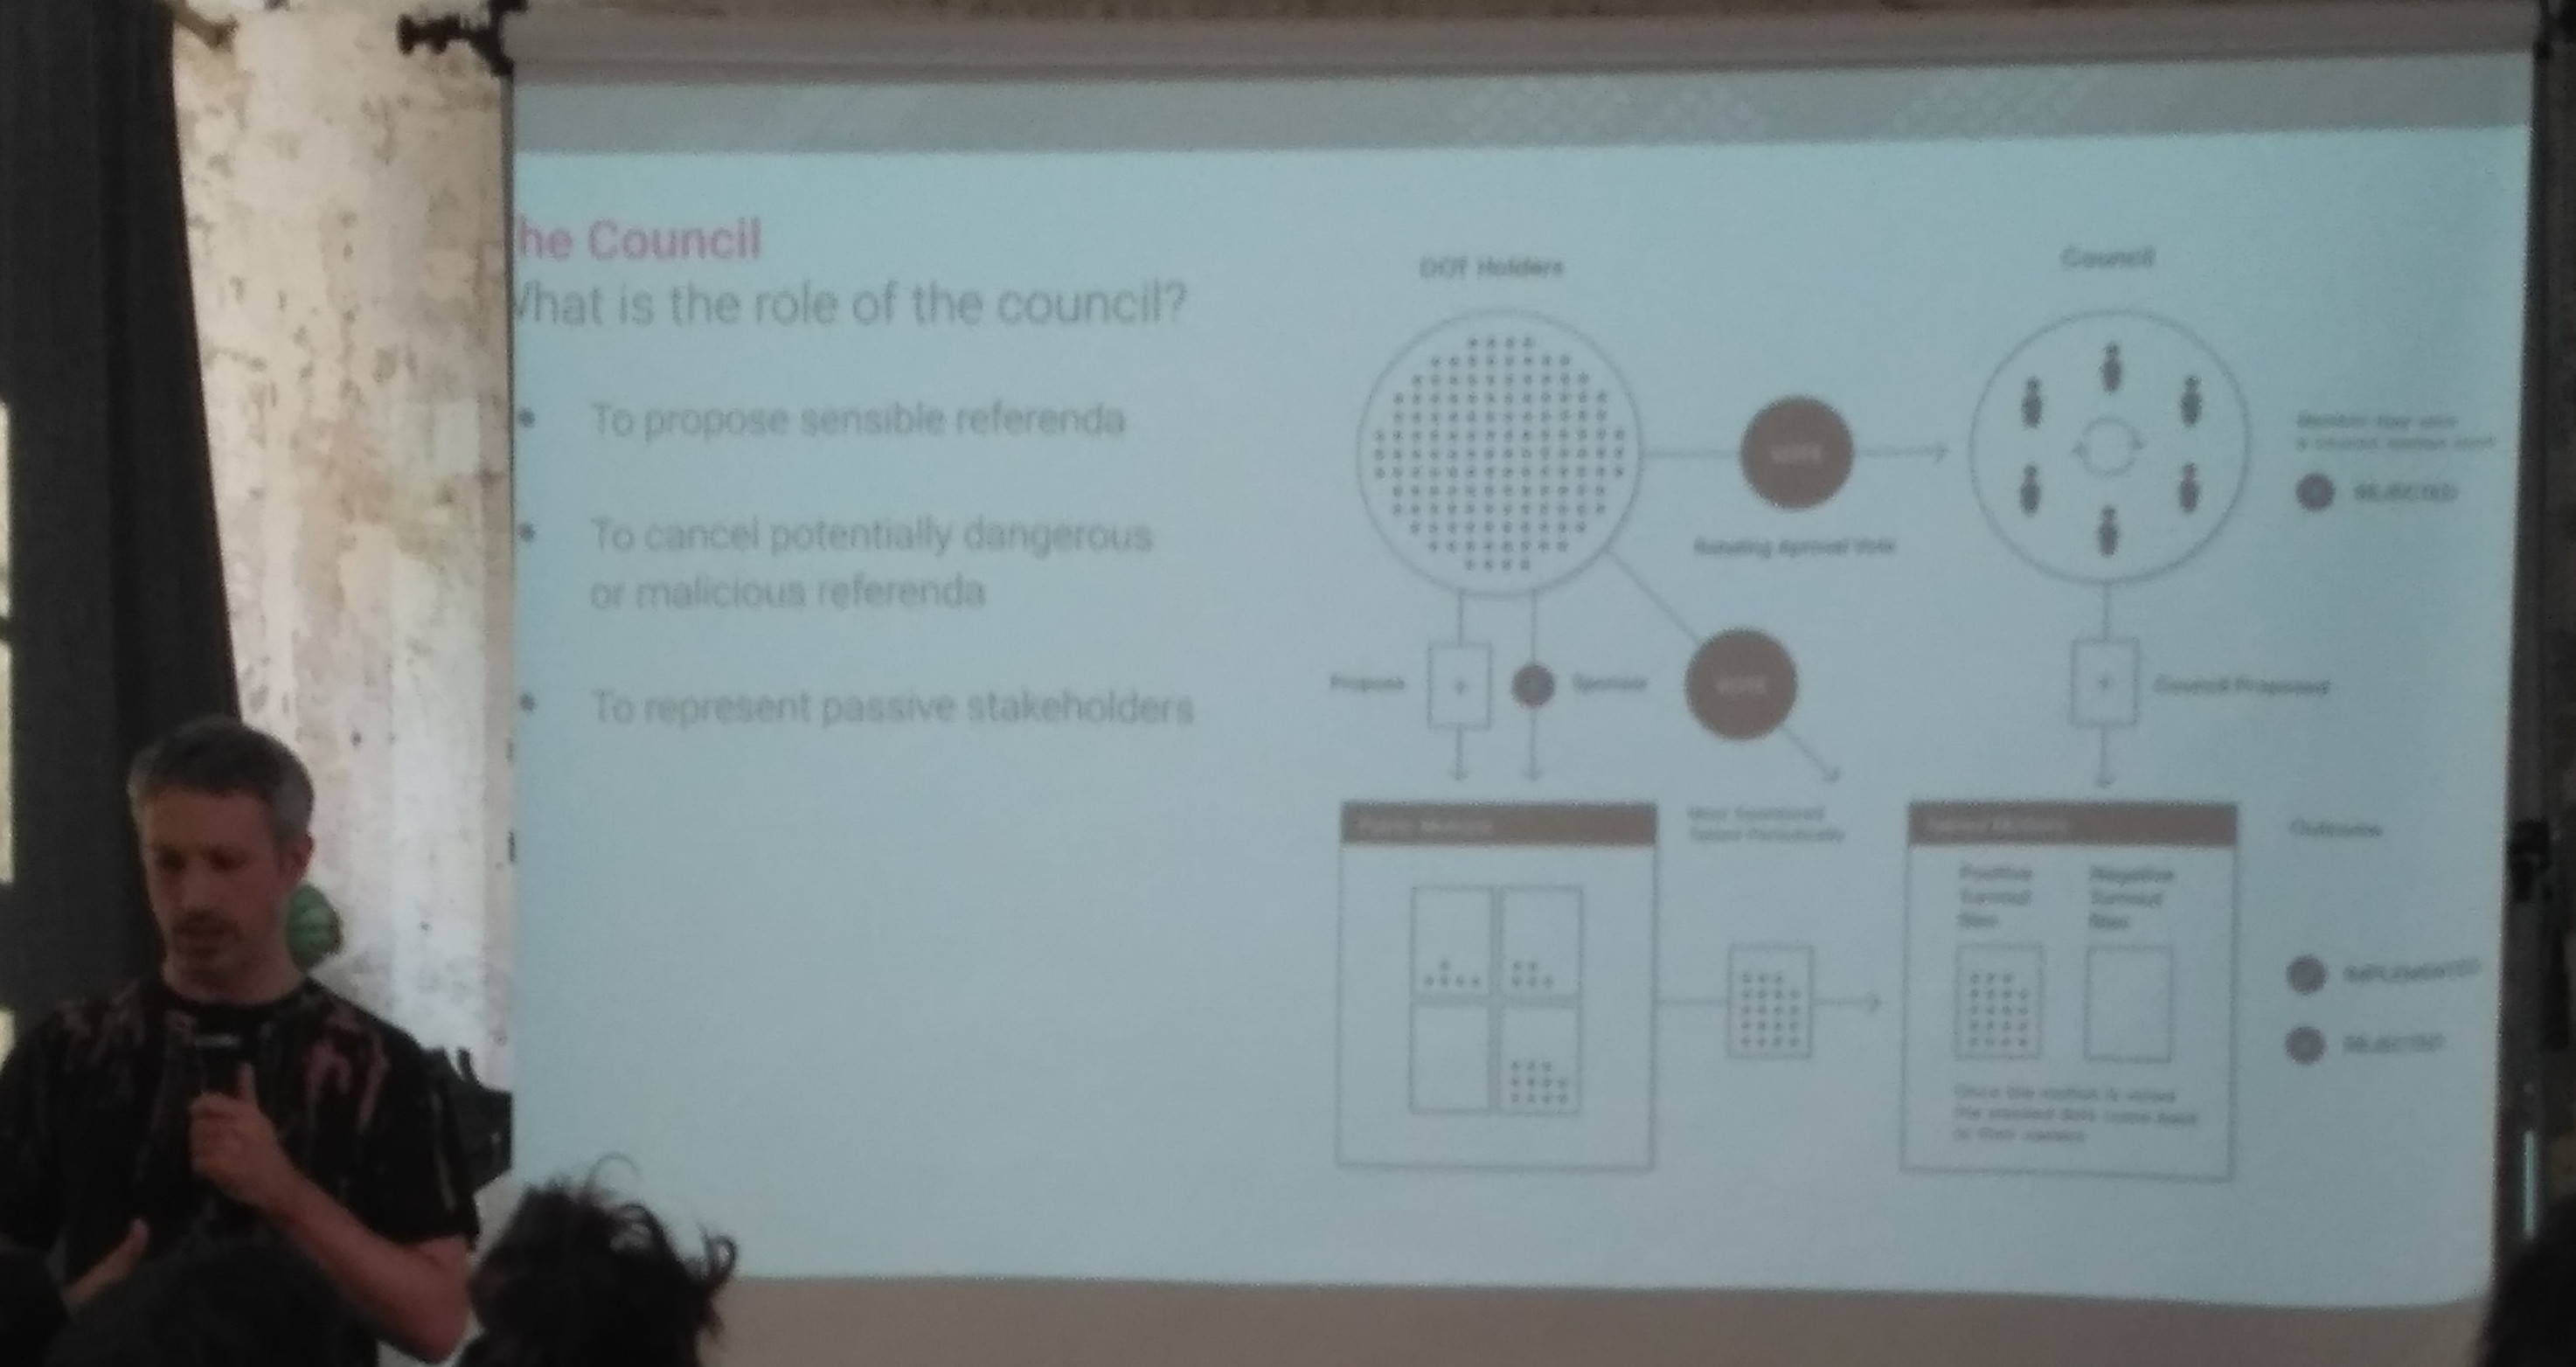 Council Role slide